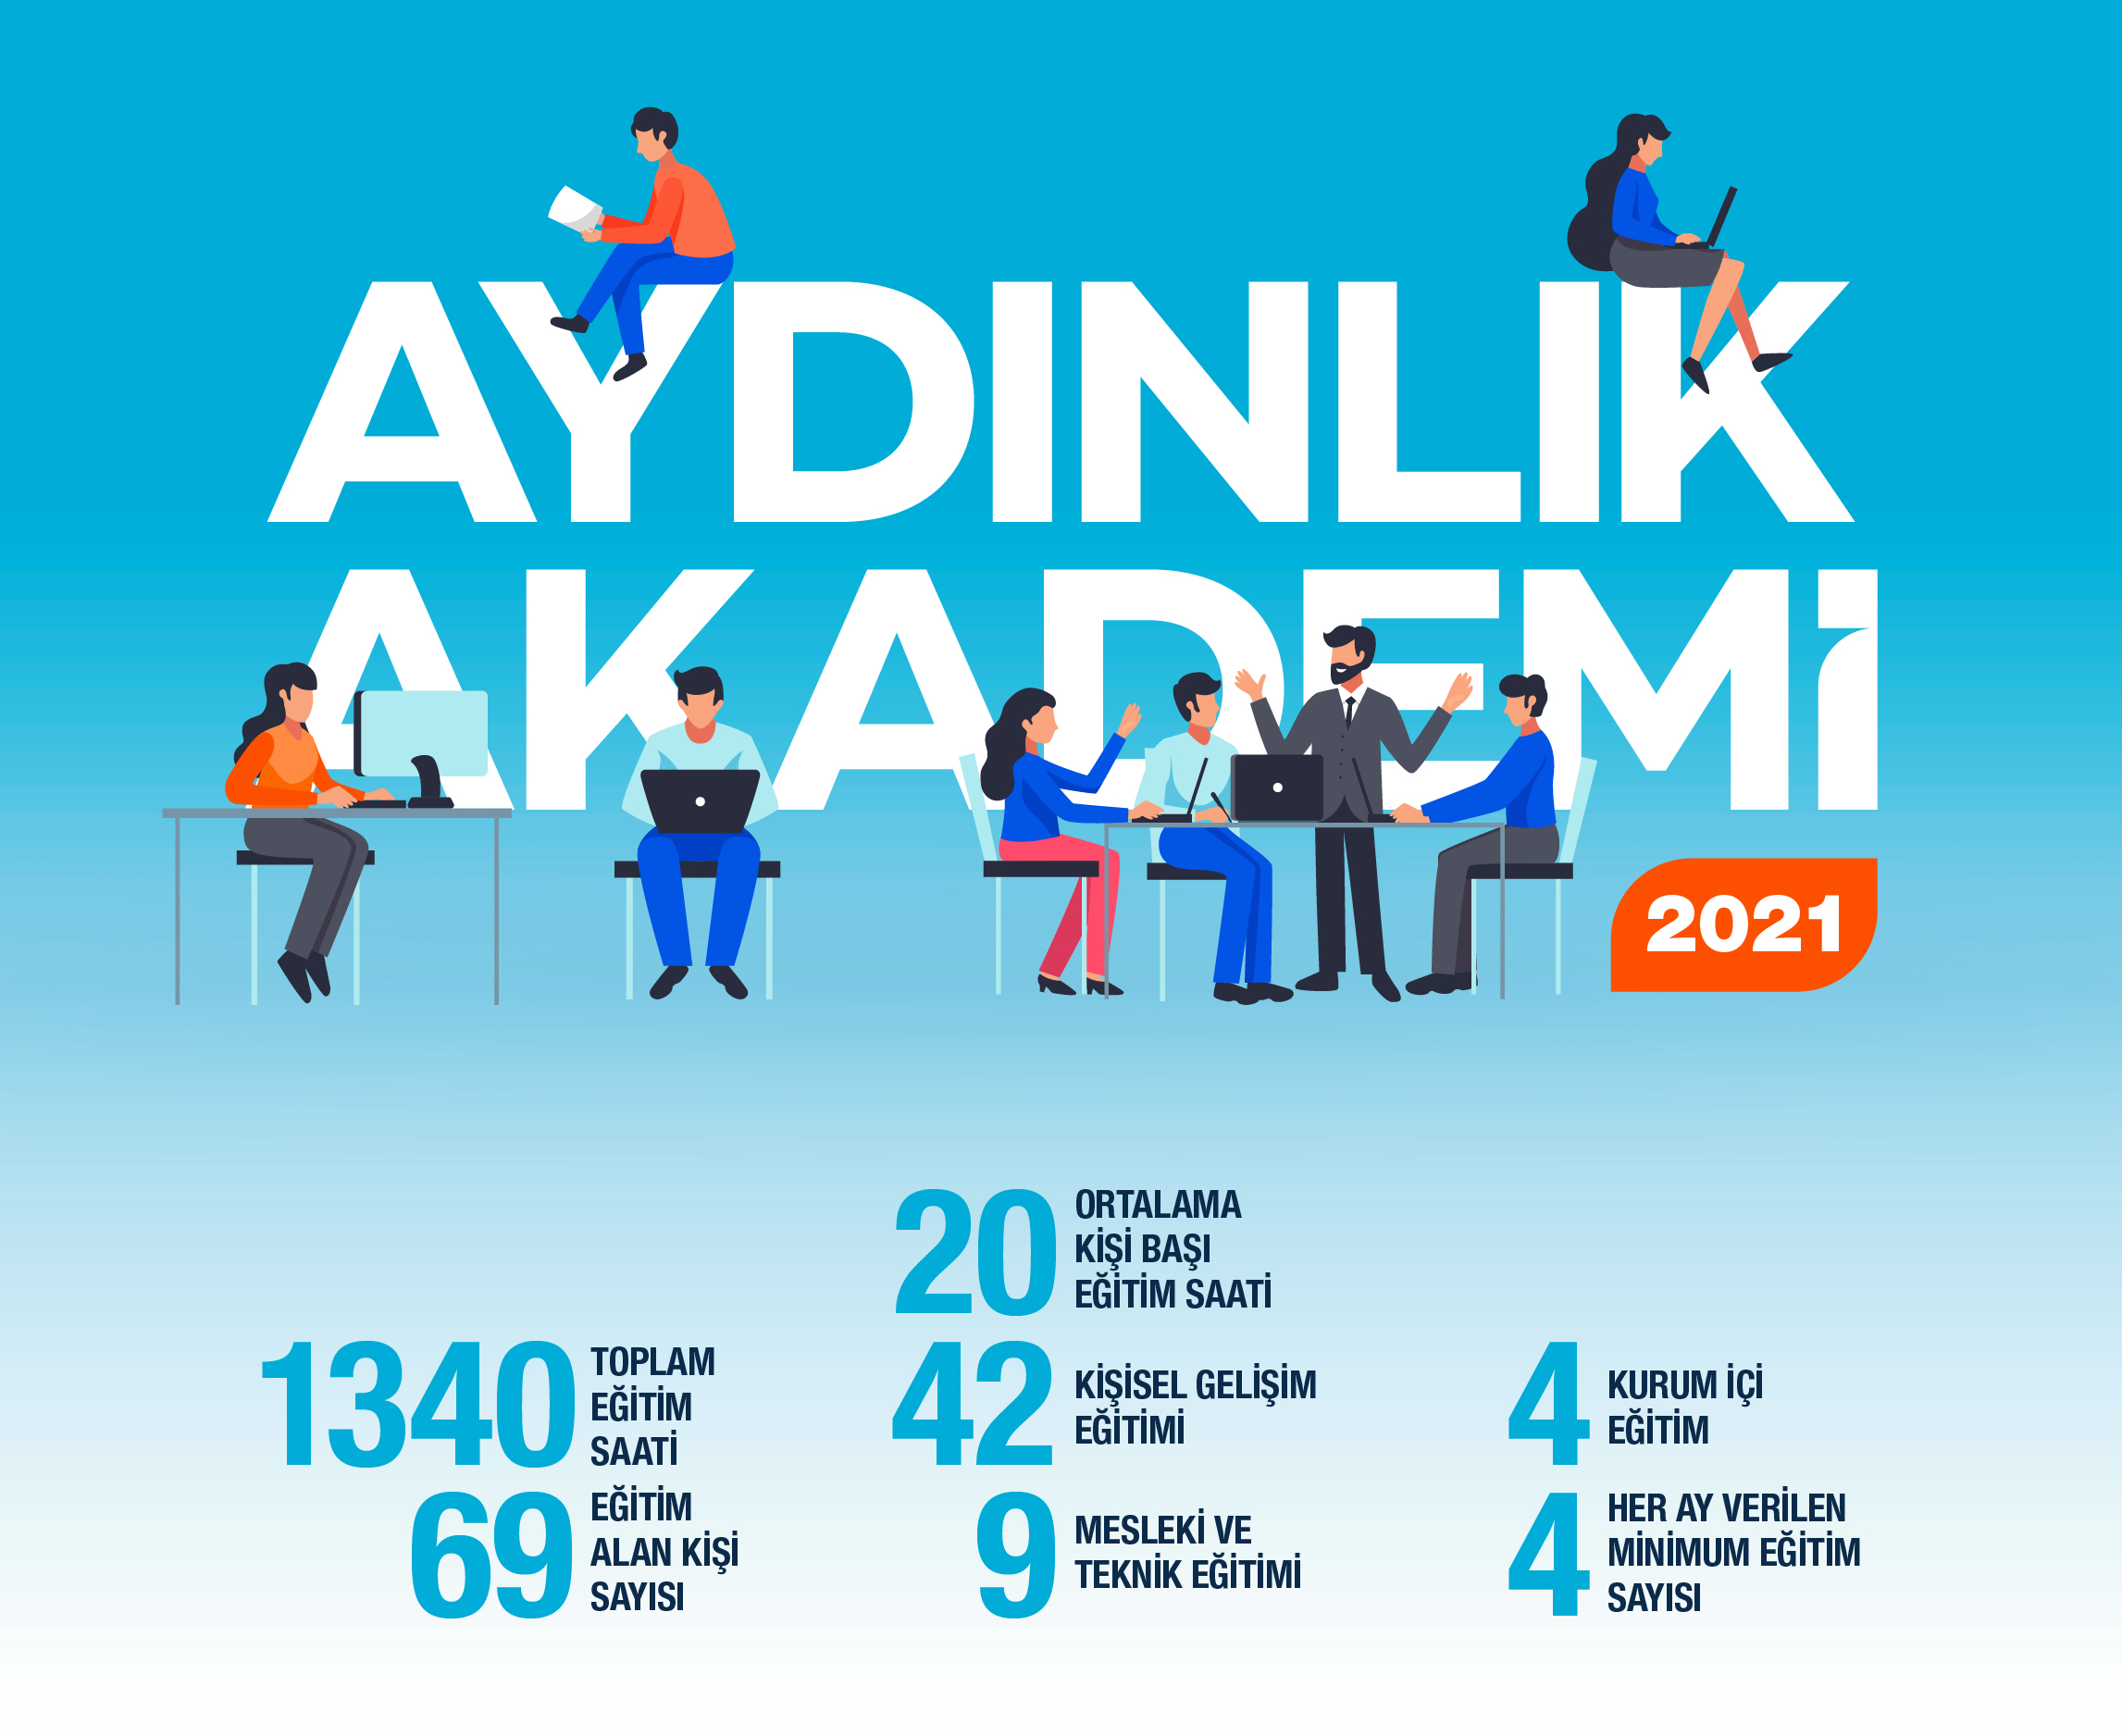 Aydınlık Akademi 2021 Faaliyet Özeti